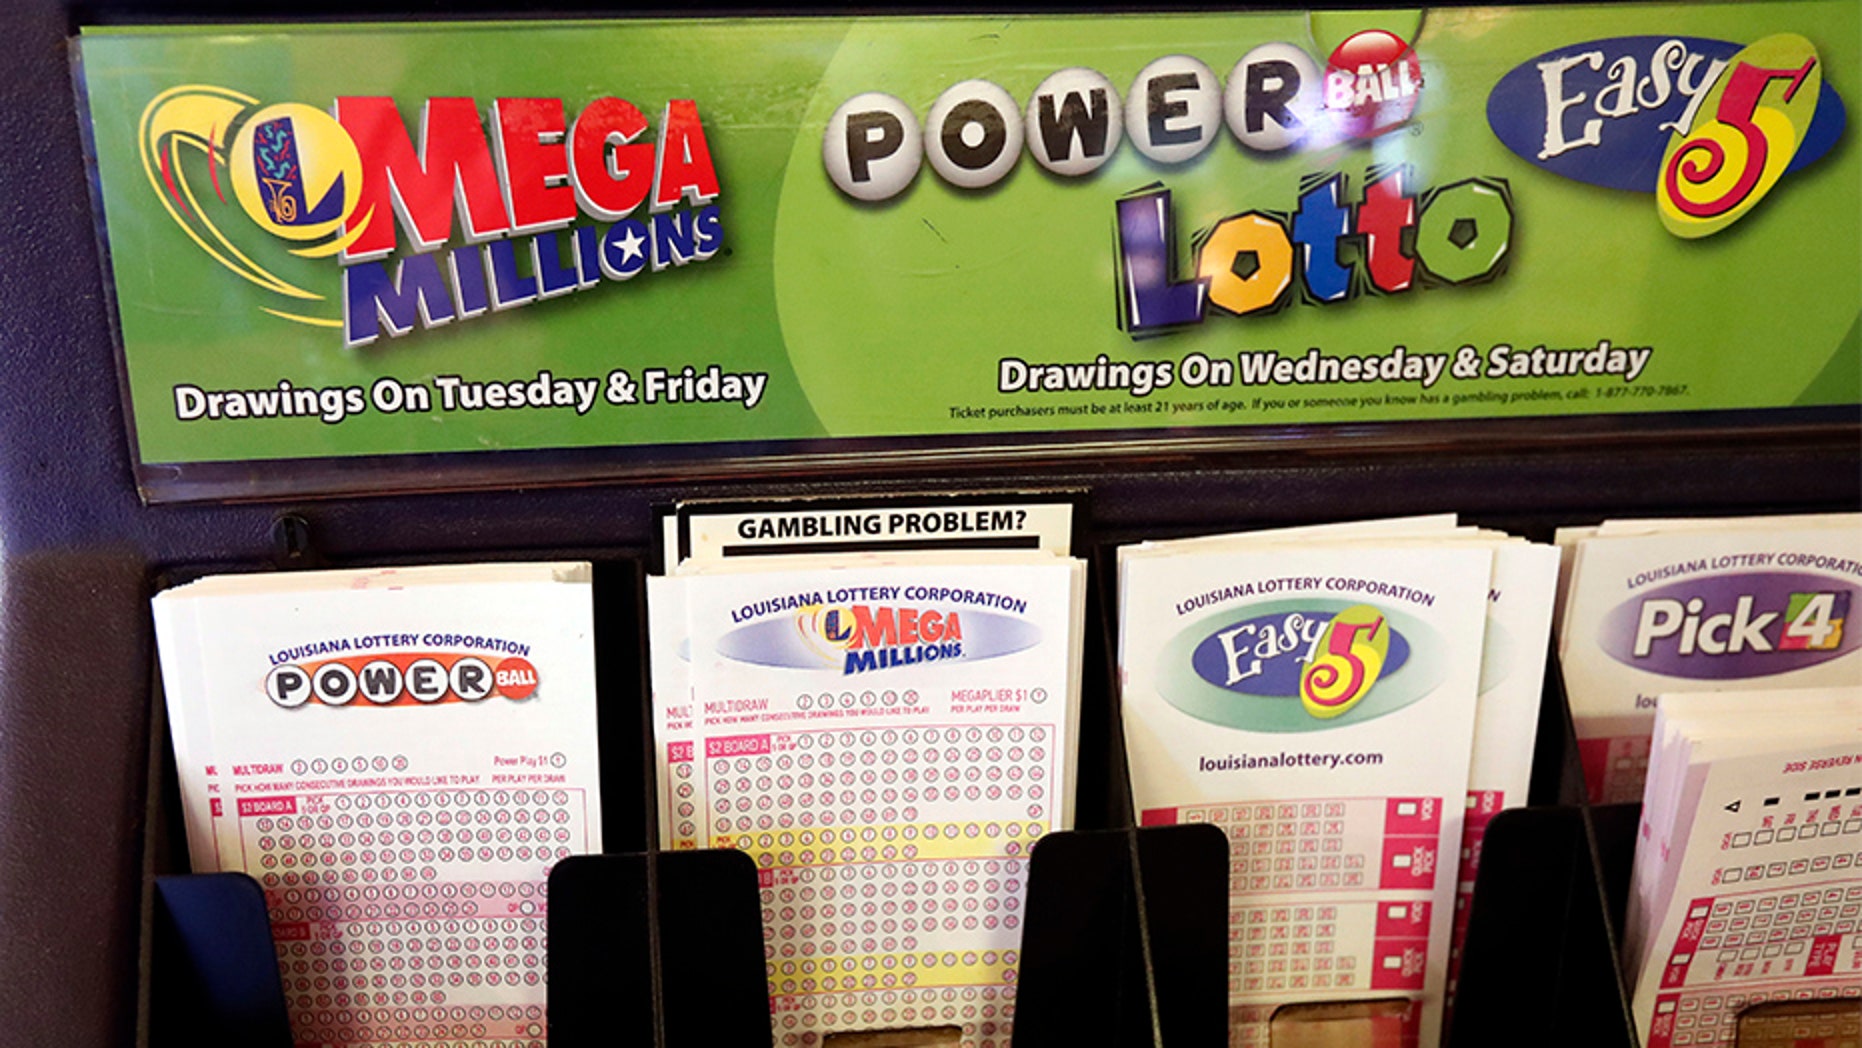 Louisiana Lottery Powerball